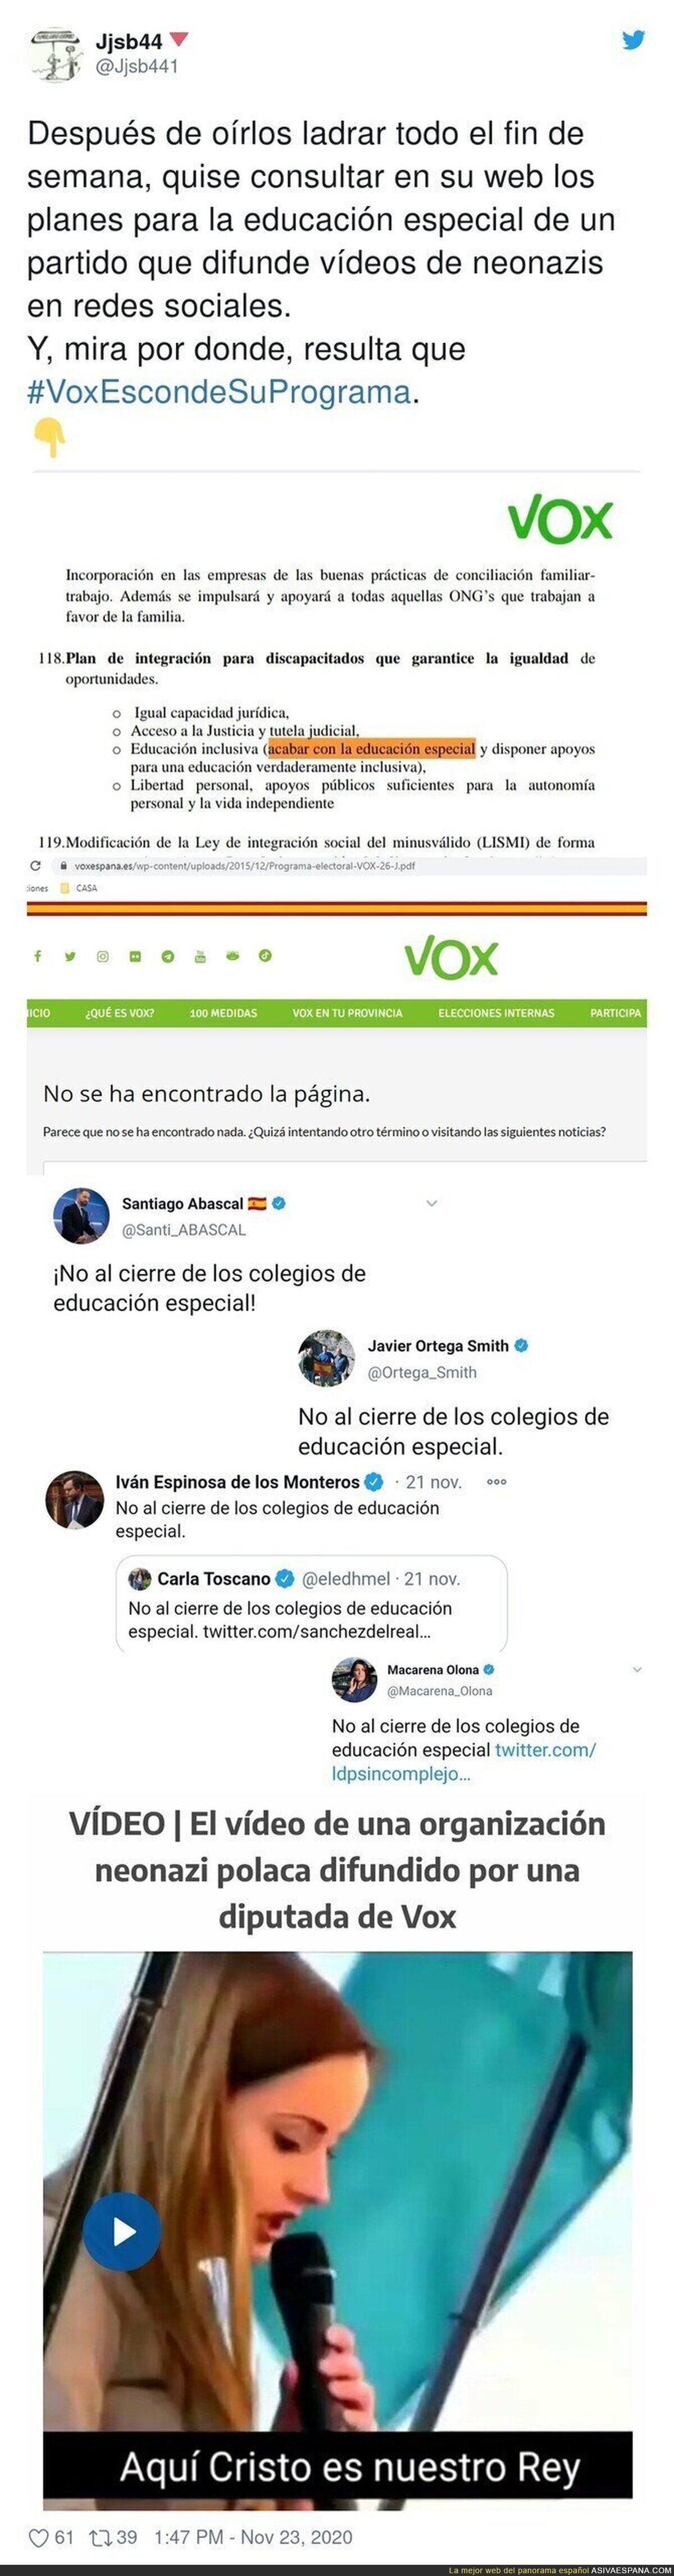 VOX es lo peor que ha pasado en la política española en toda su historia y todo esto lo demuestra